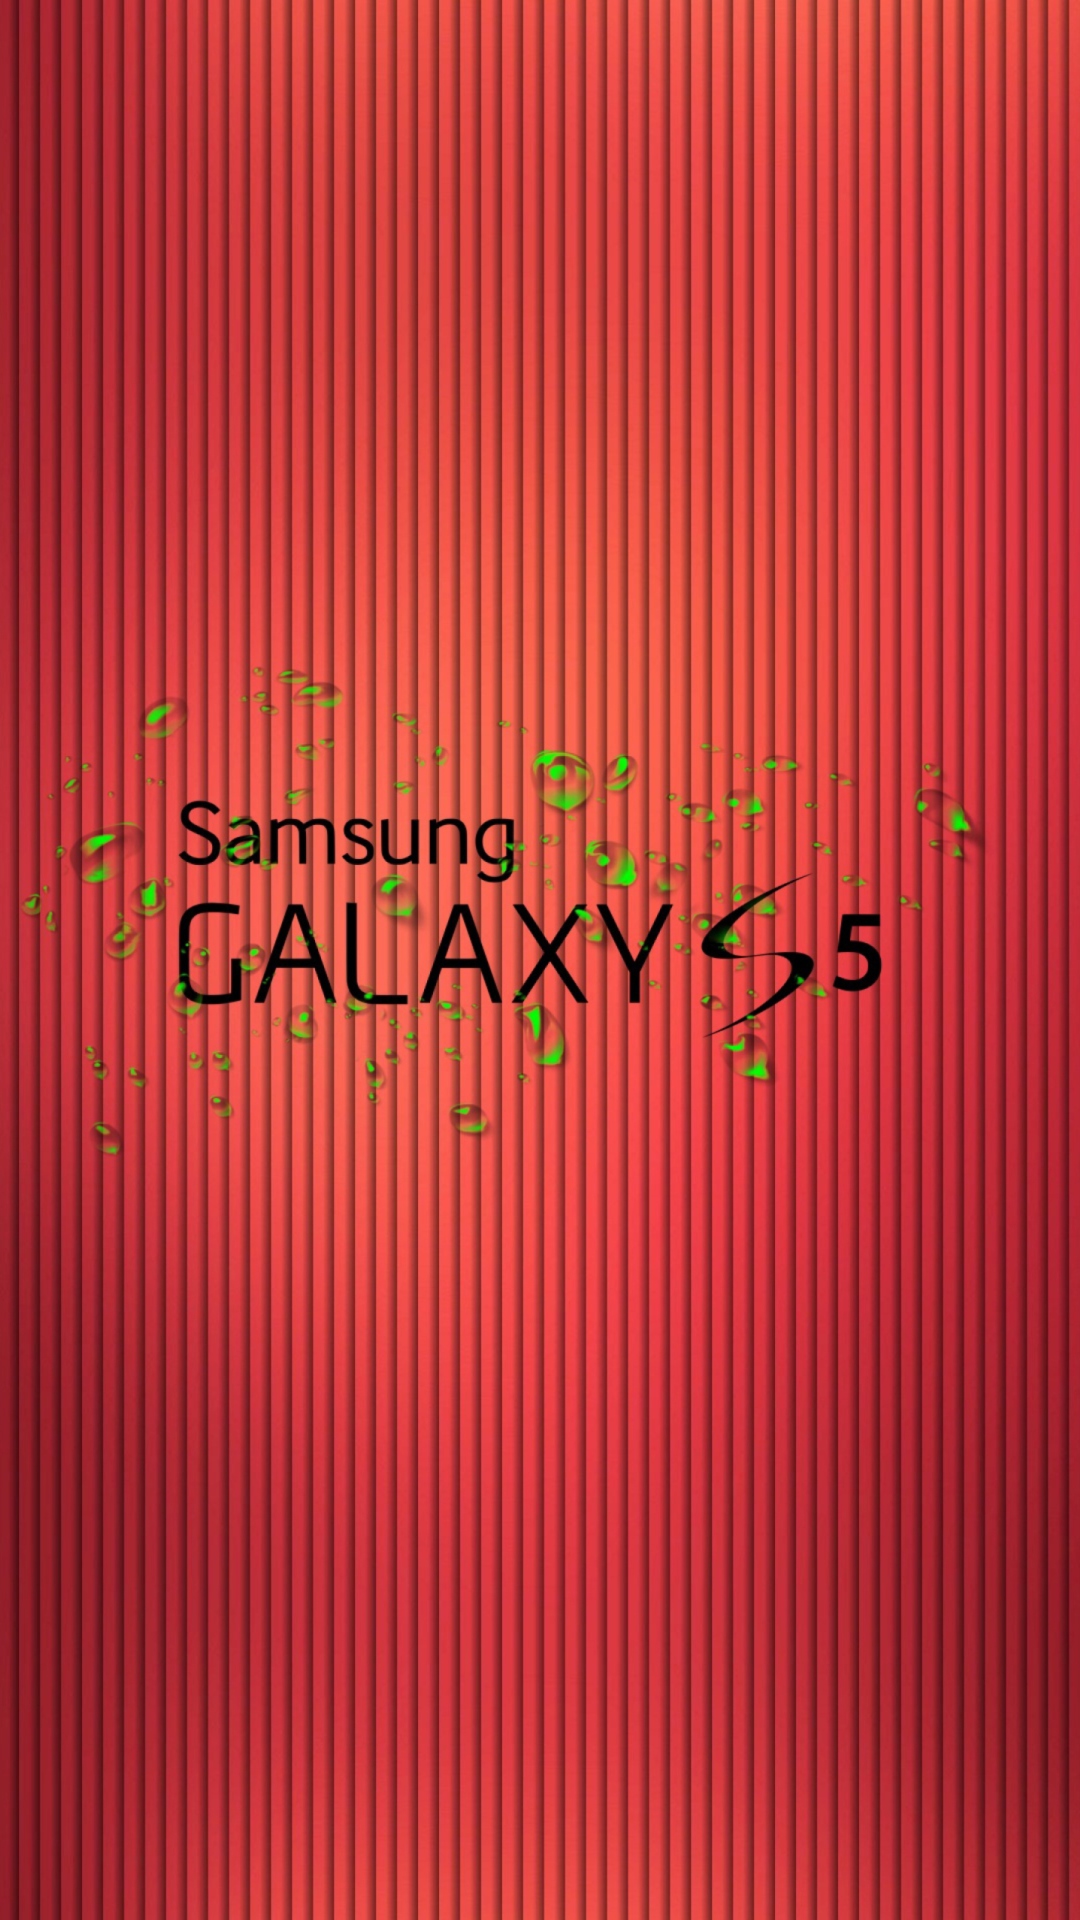 Galaxy S5 wallpaper 1080x1920